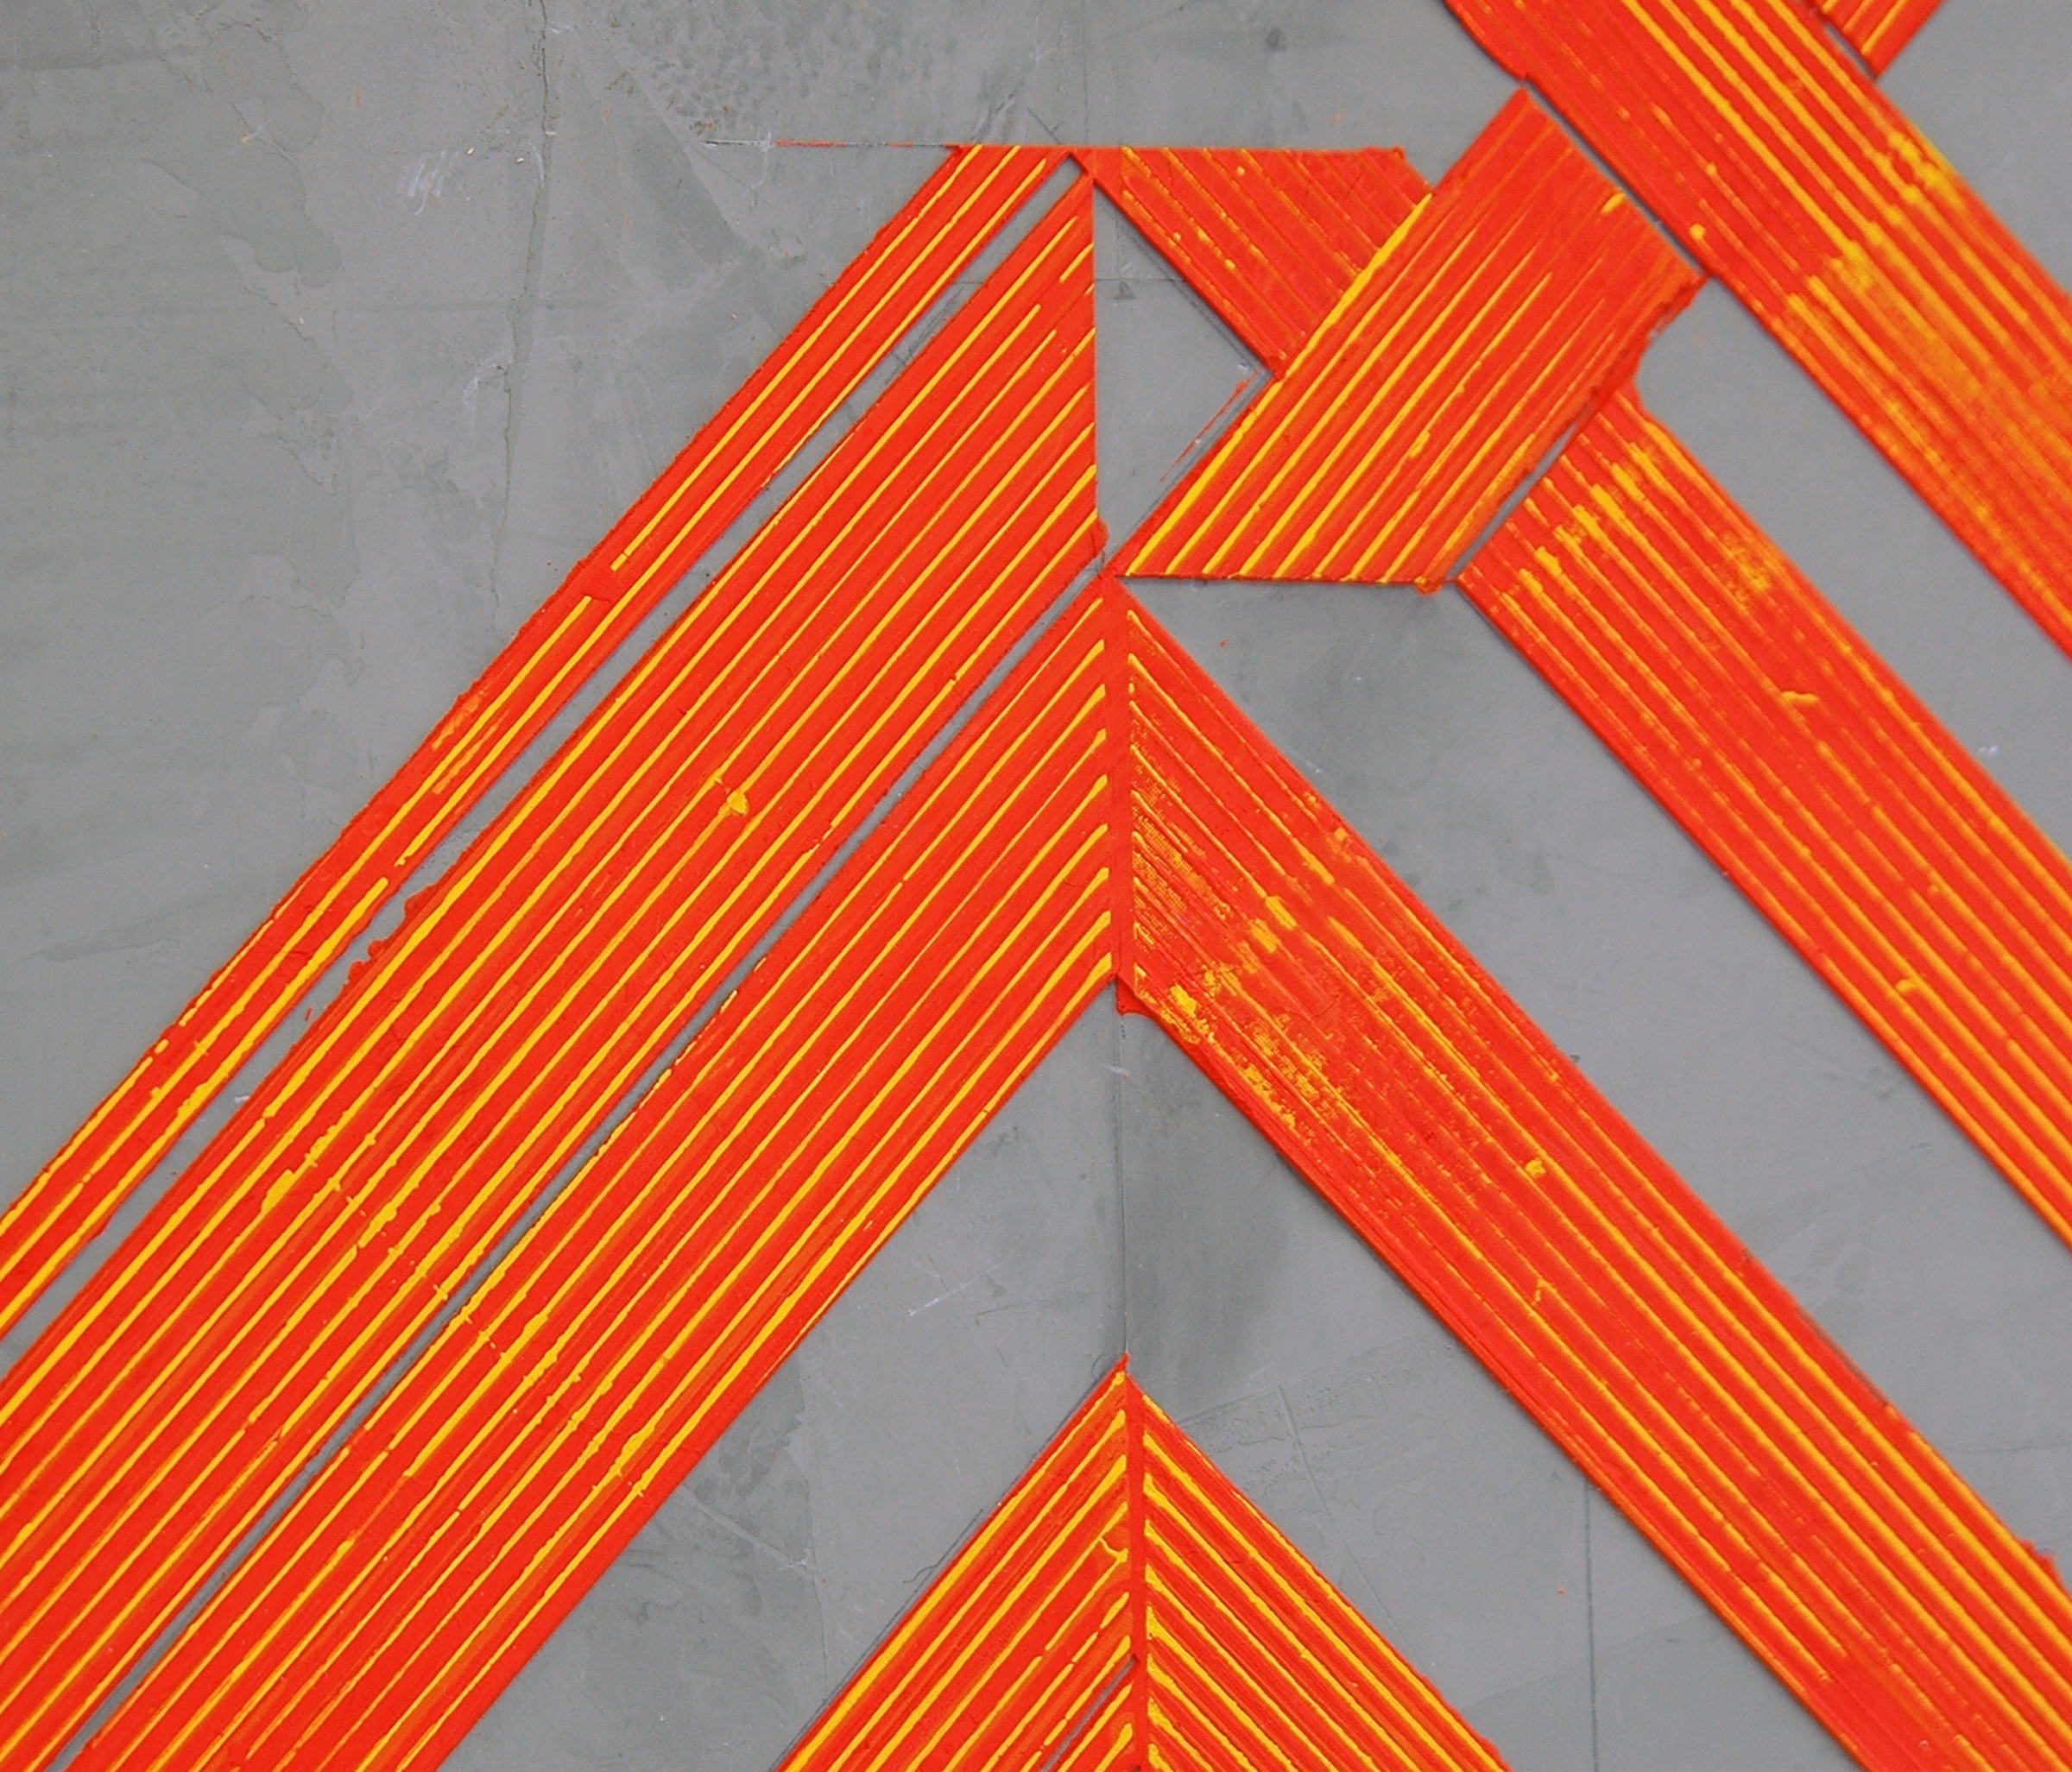   ELISE FERGUSON  (detail) &nbsp;N V V , pigmented plaster on MDF panel, 30" x 30", 2014 